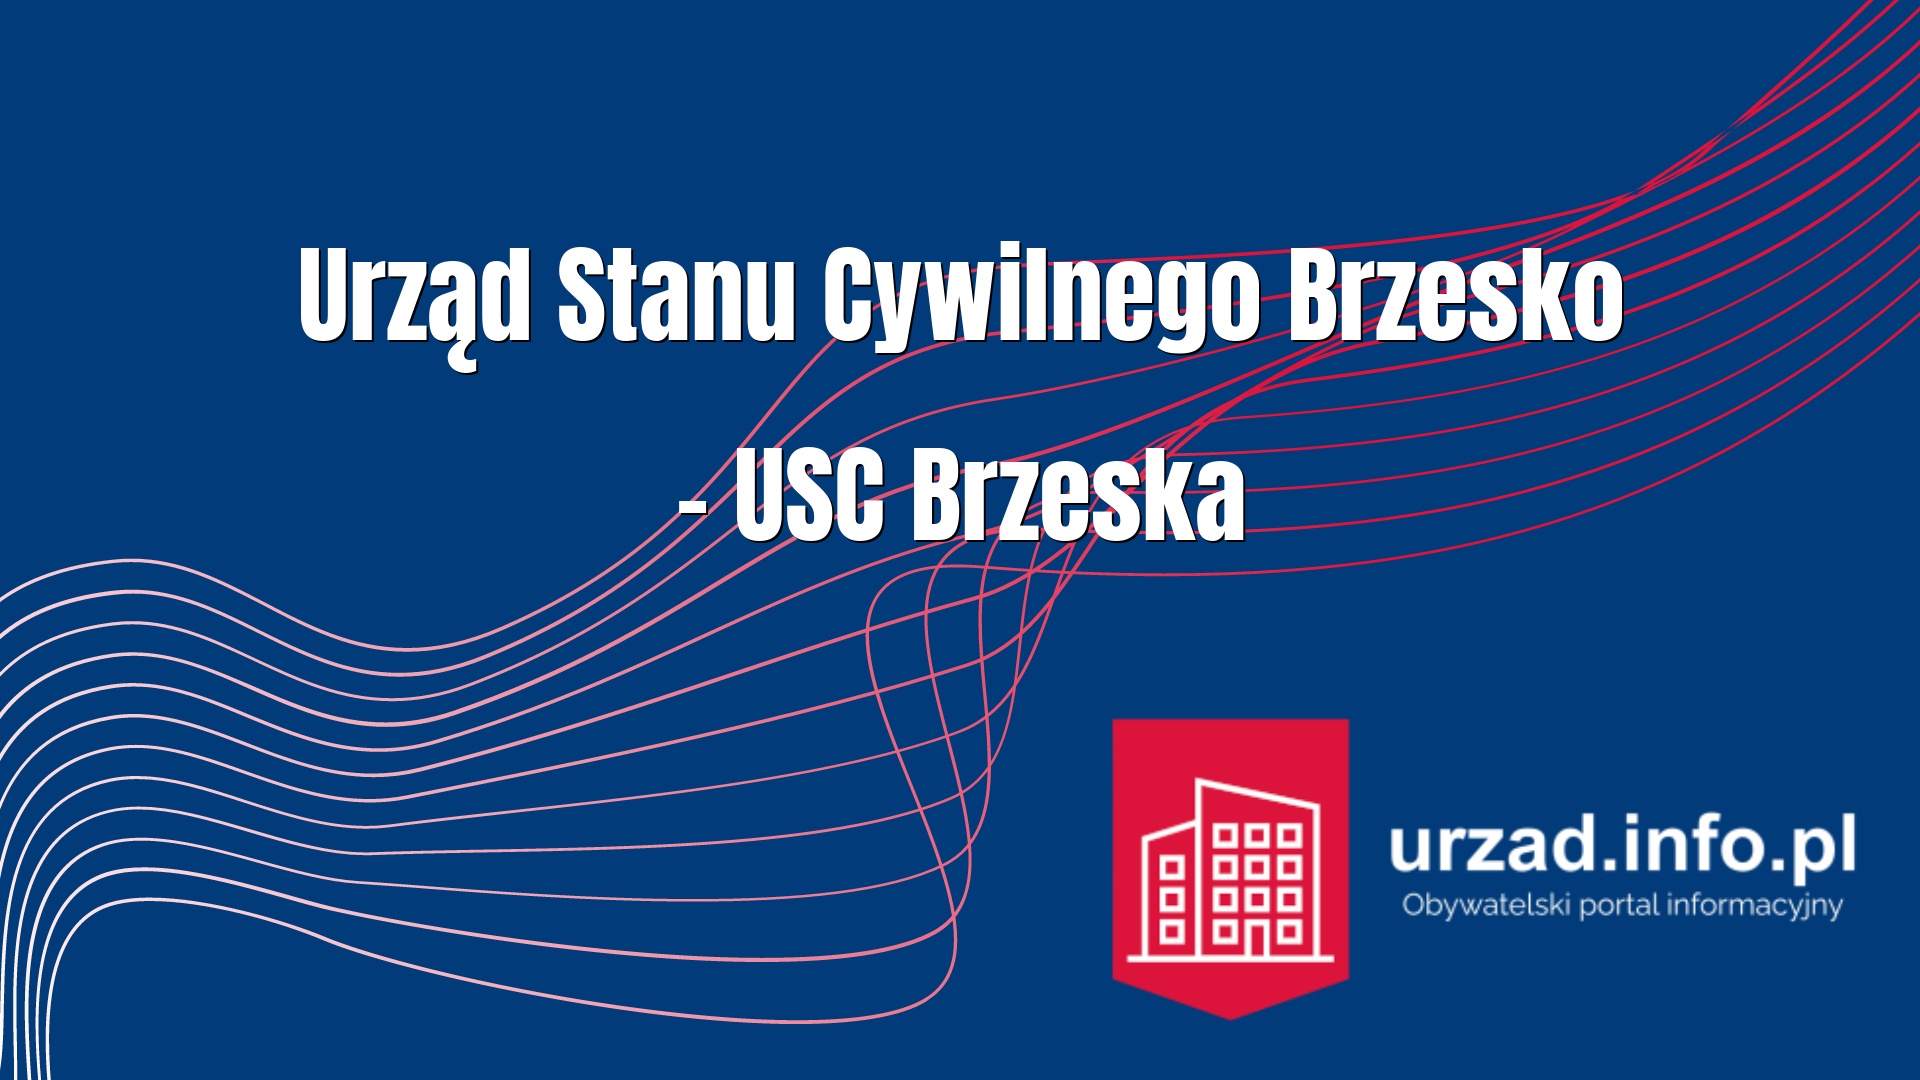 Urząd Stanu Cywilnego Brzesko – USC Brzeska